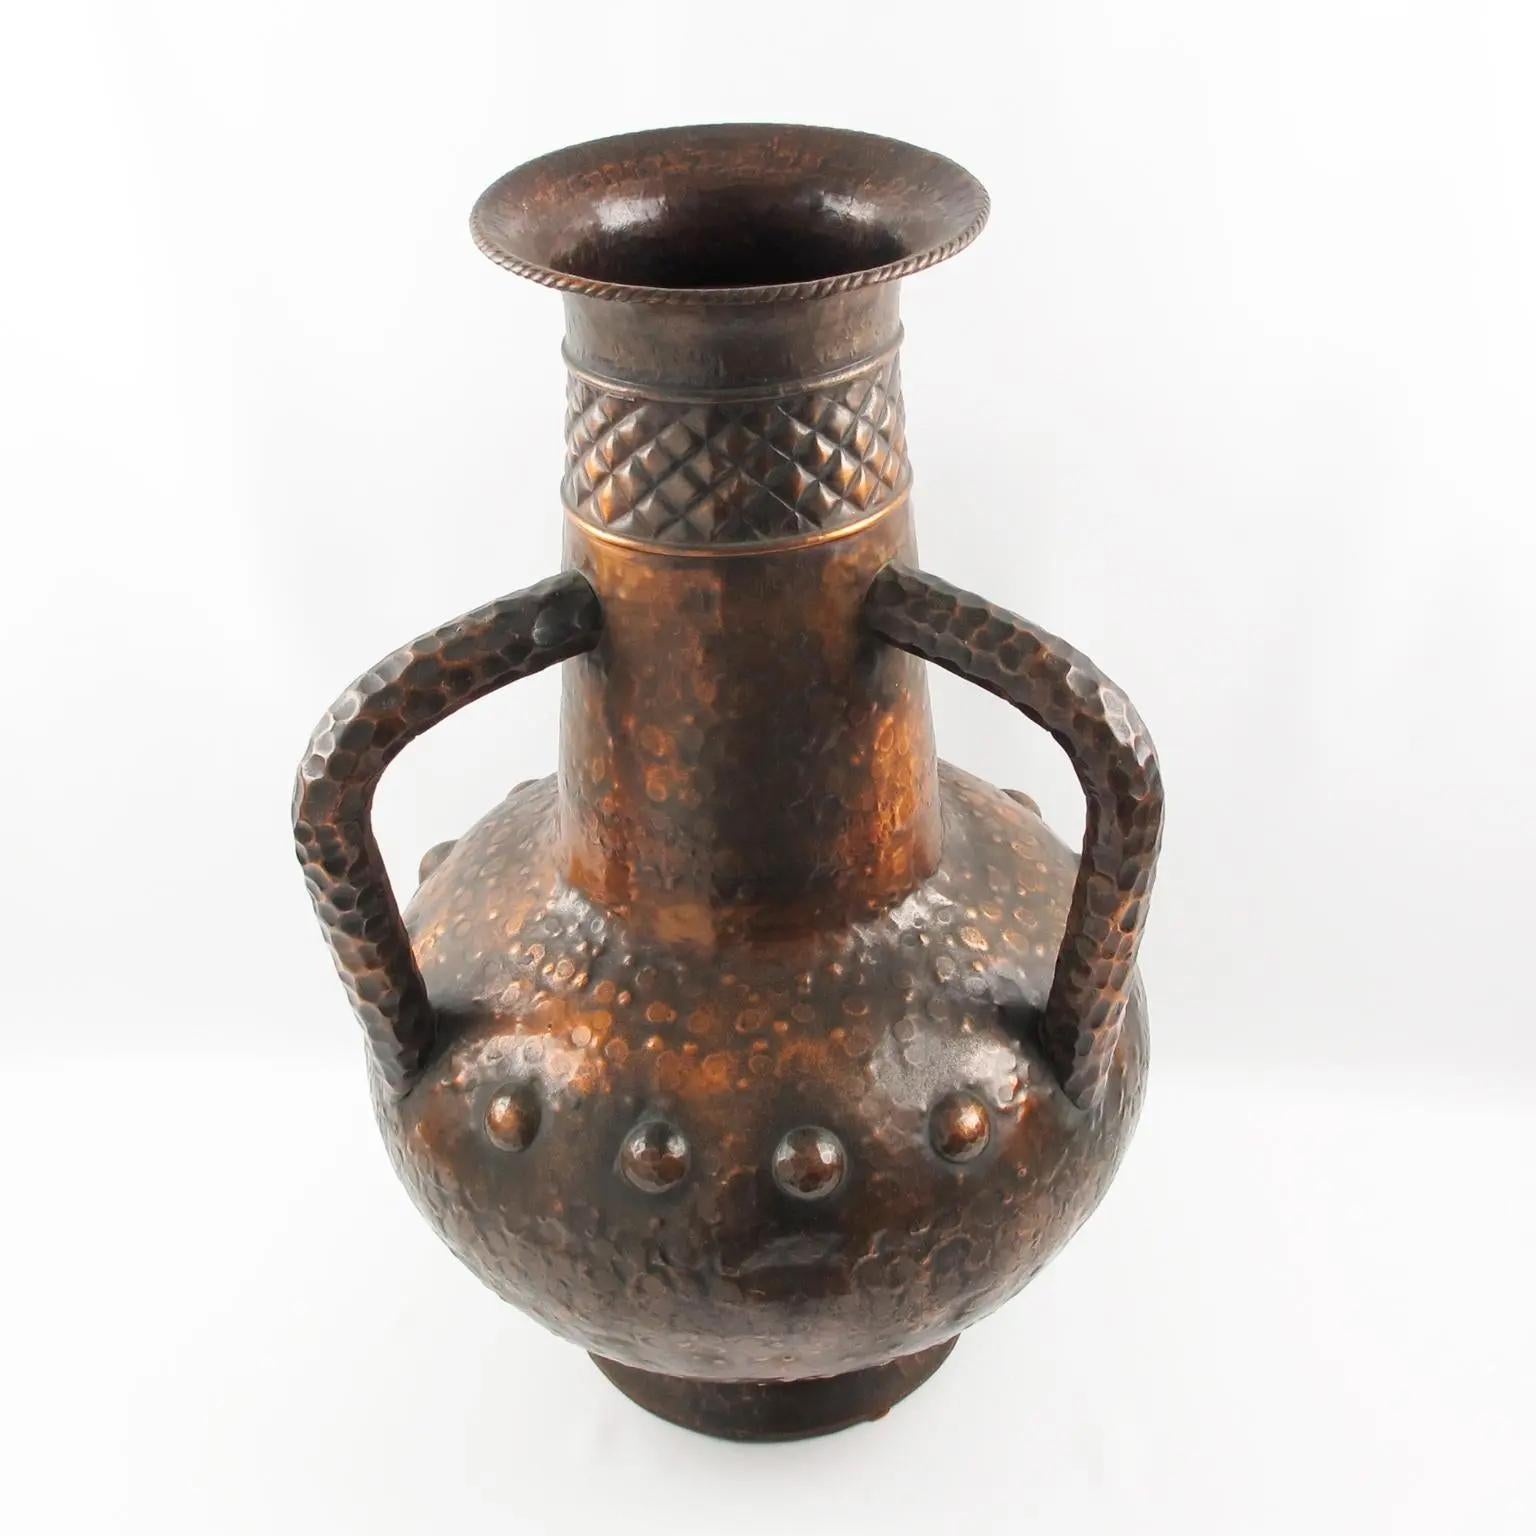 Ce vase monumental en forme d'urne balustre avec poignées a été fabriqué à la main en Italie dans les années 1960. Les détails travaillés à la main sur le cuivre, ainsi que sa belle patine, confèrent à ce récipient un attrait unique. Le vase